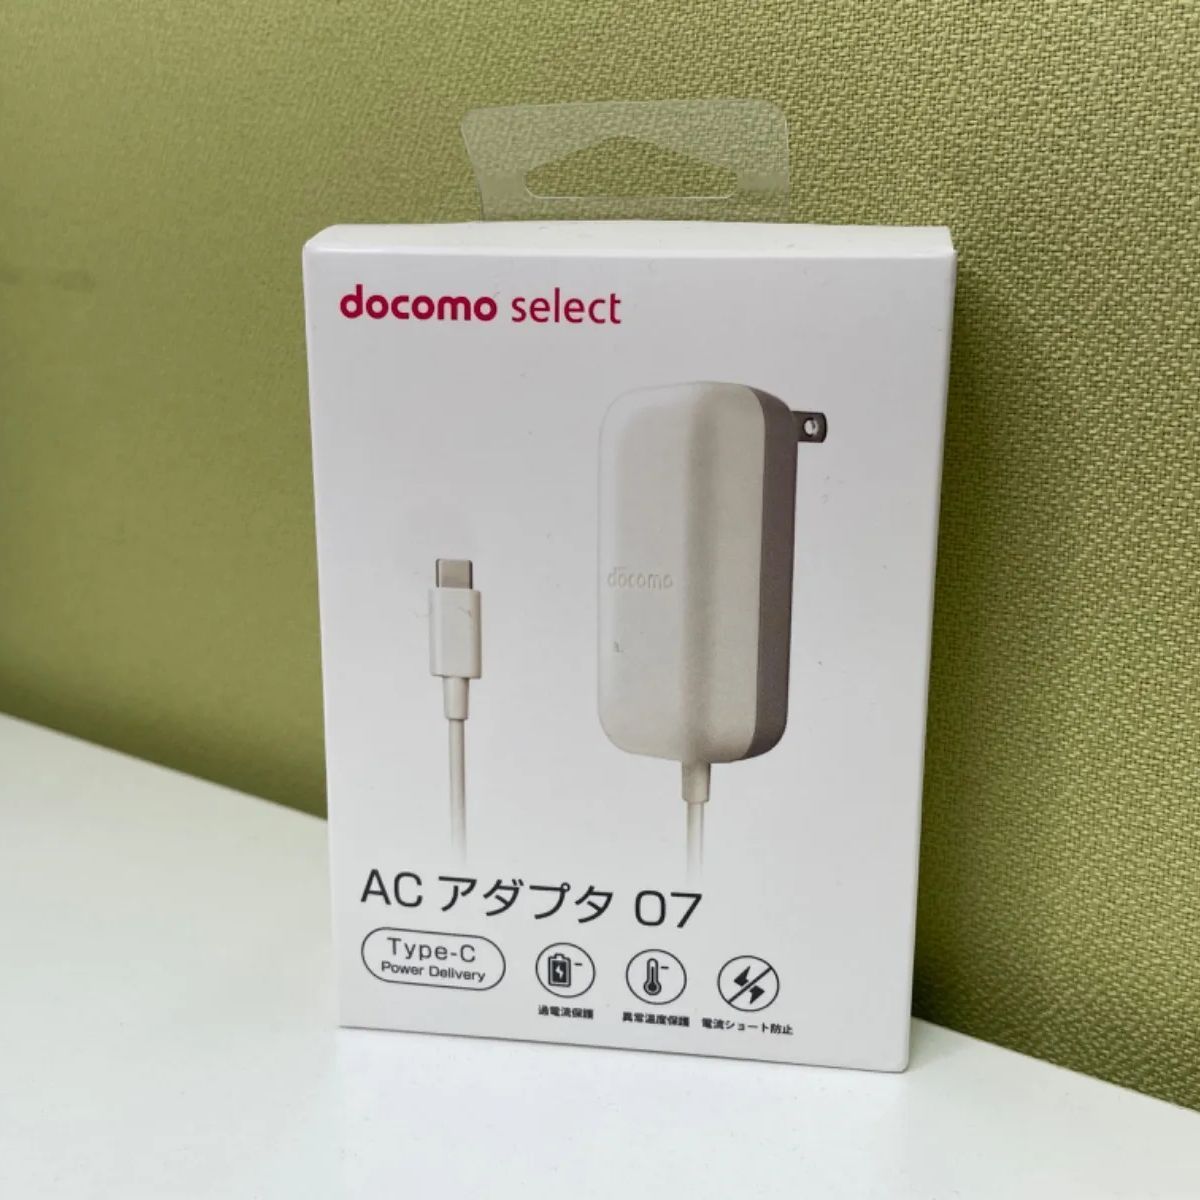 豪奢な Docomo select AC select 07 ホワイト USB AC アダプタ07 ...